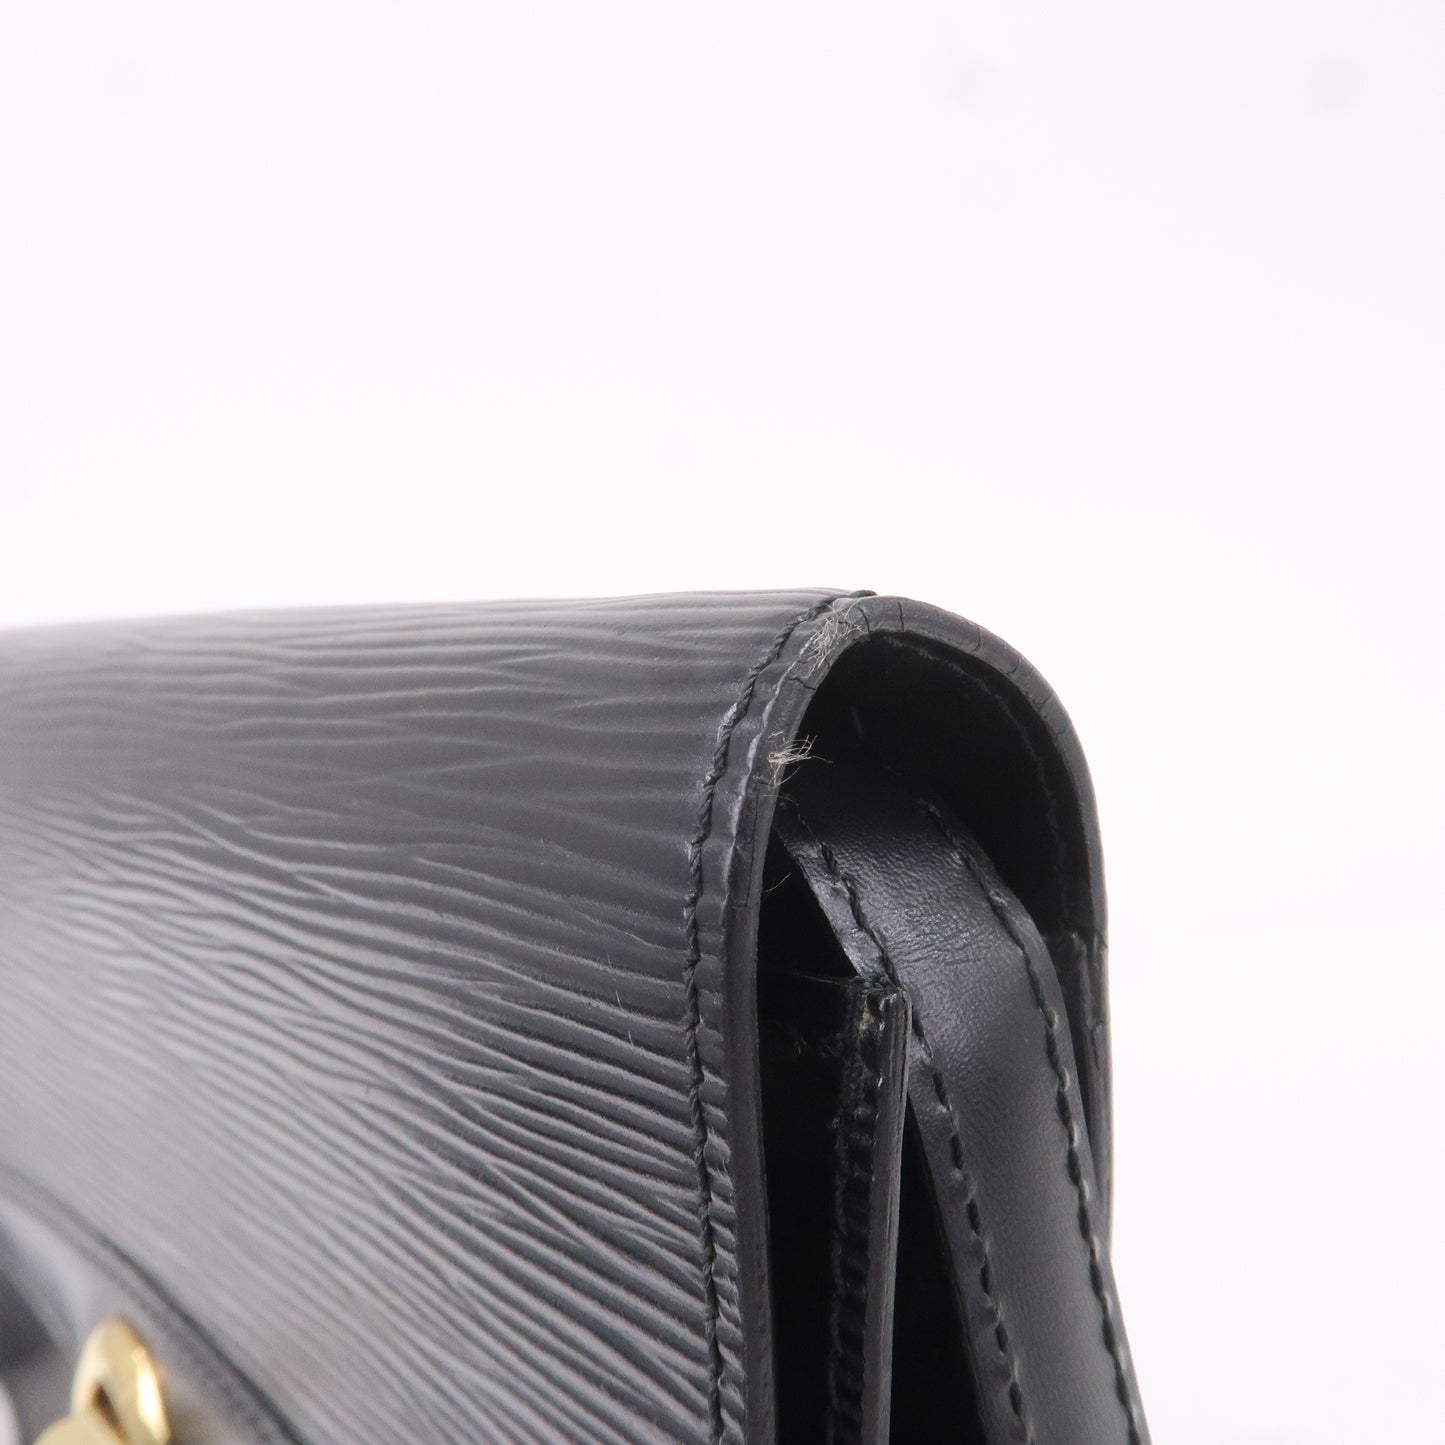  (Louis Vuitton) Louis Vuitton Epi Line ryusakku (Shoulder)  Noir (Black) m52282 : Clothing, Shoes & Jewelry